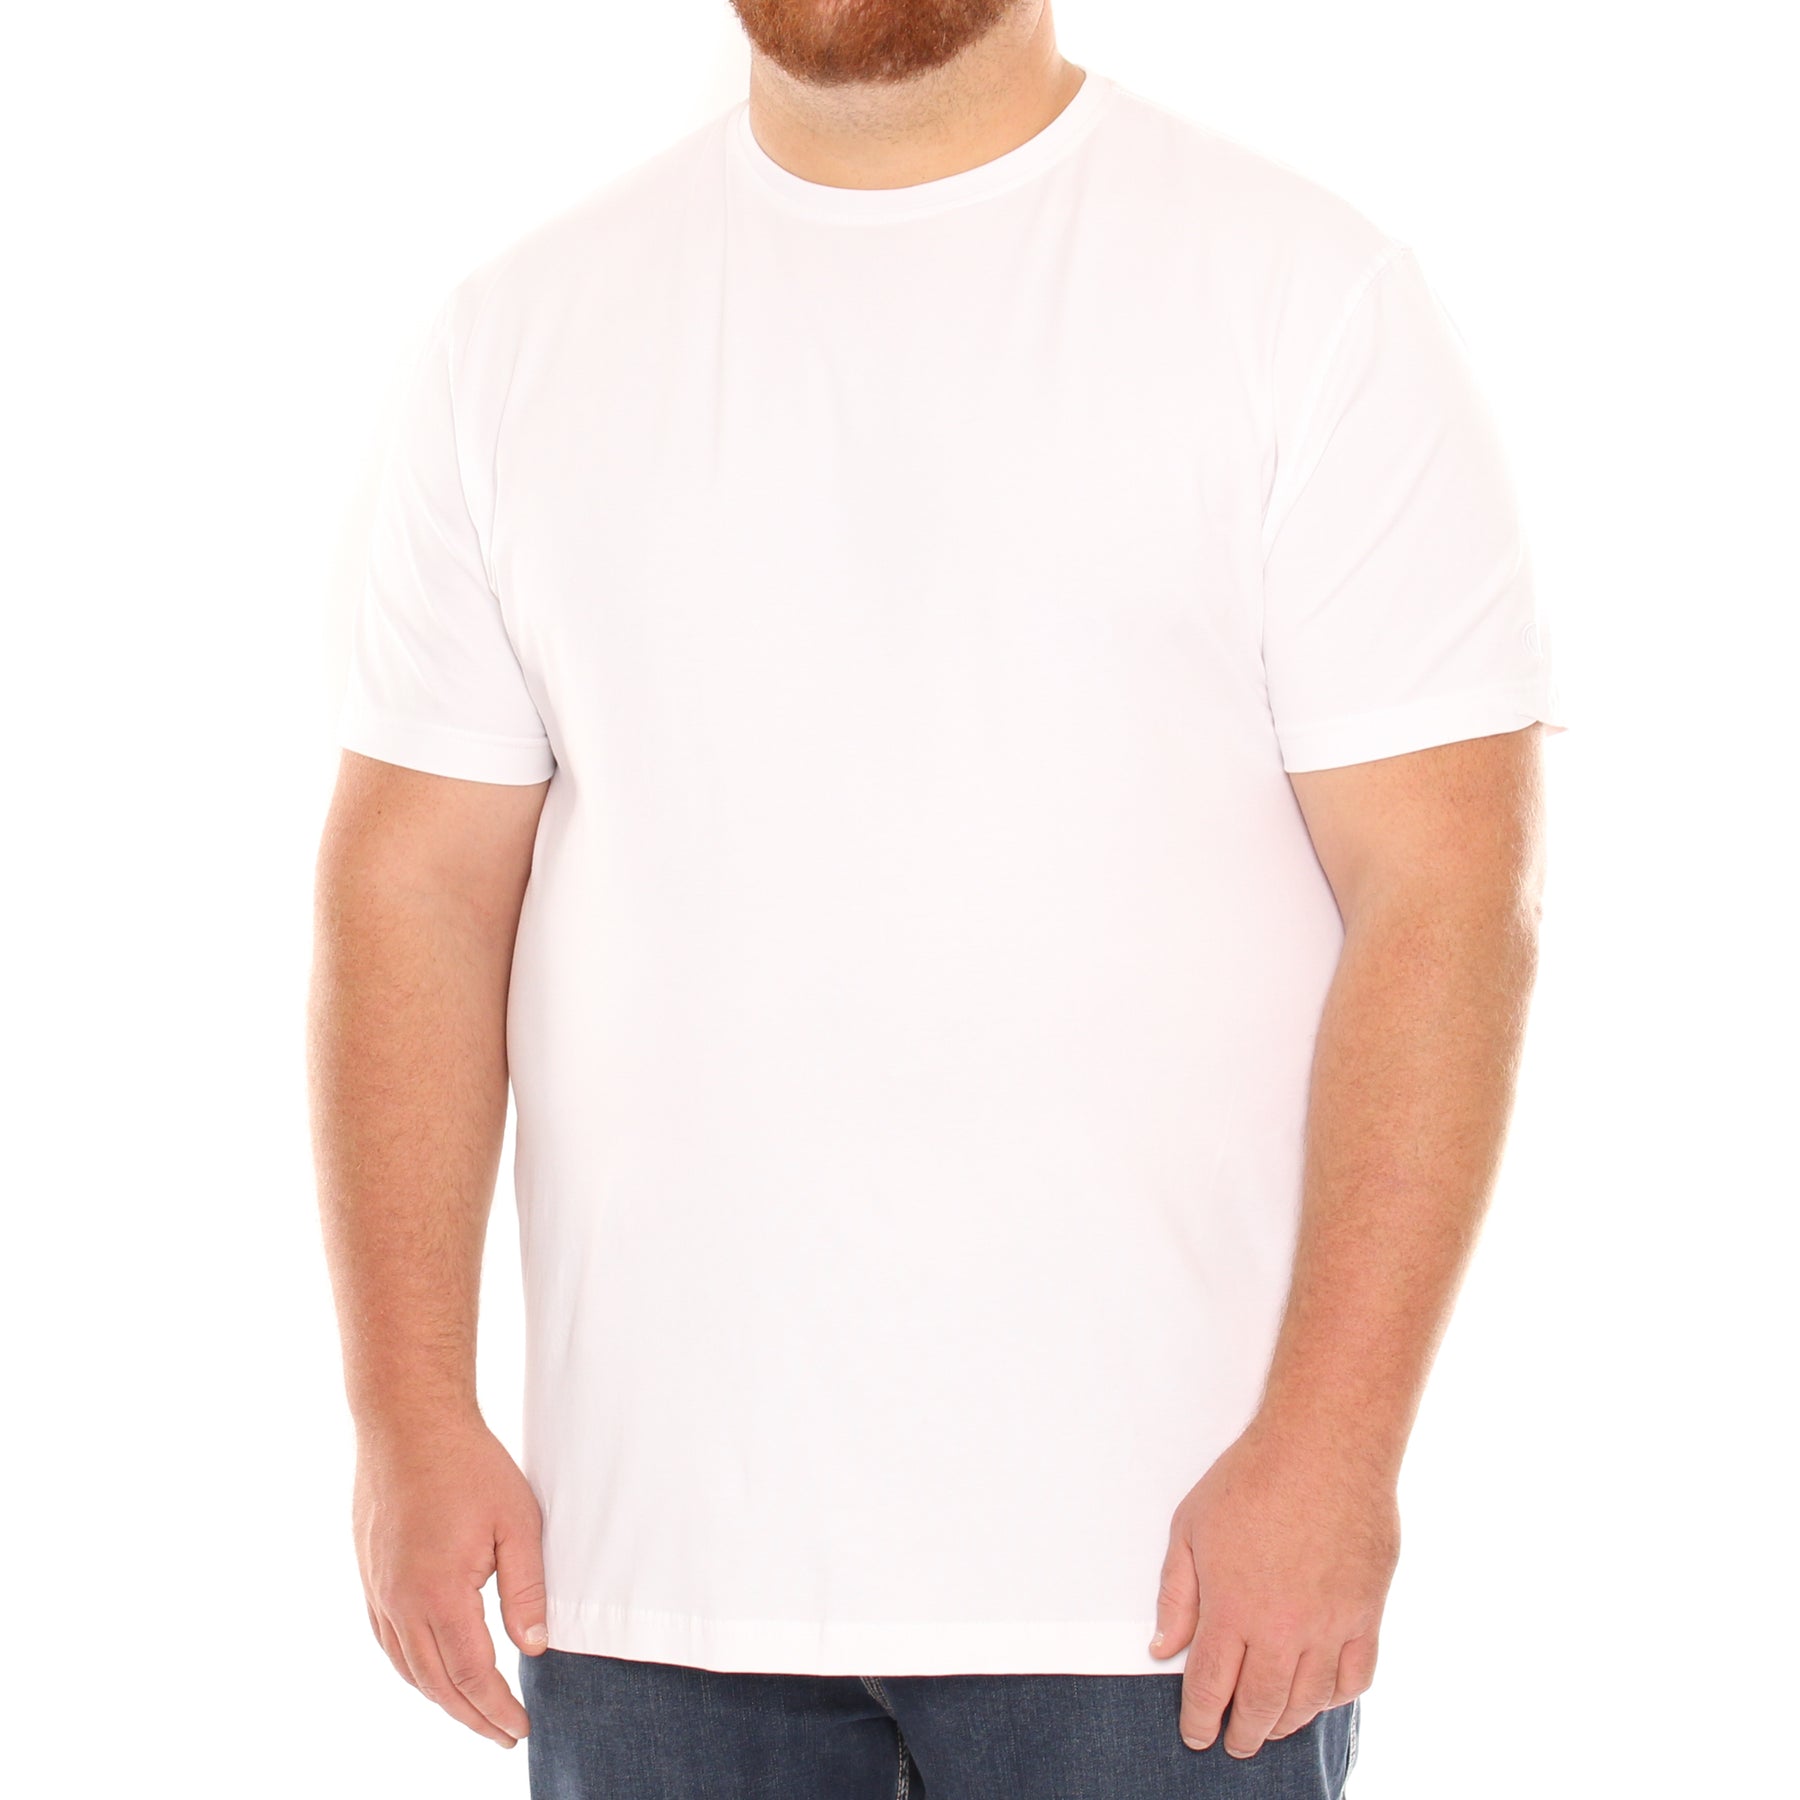 T-Shirt uni - 27,98 $ à l'achat de 2 ou +